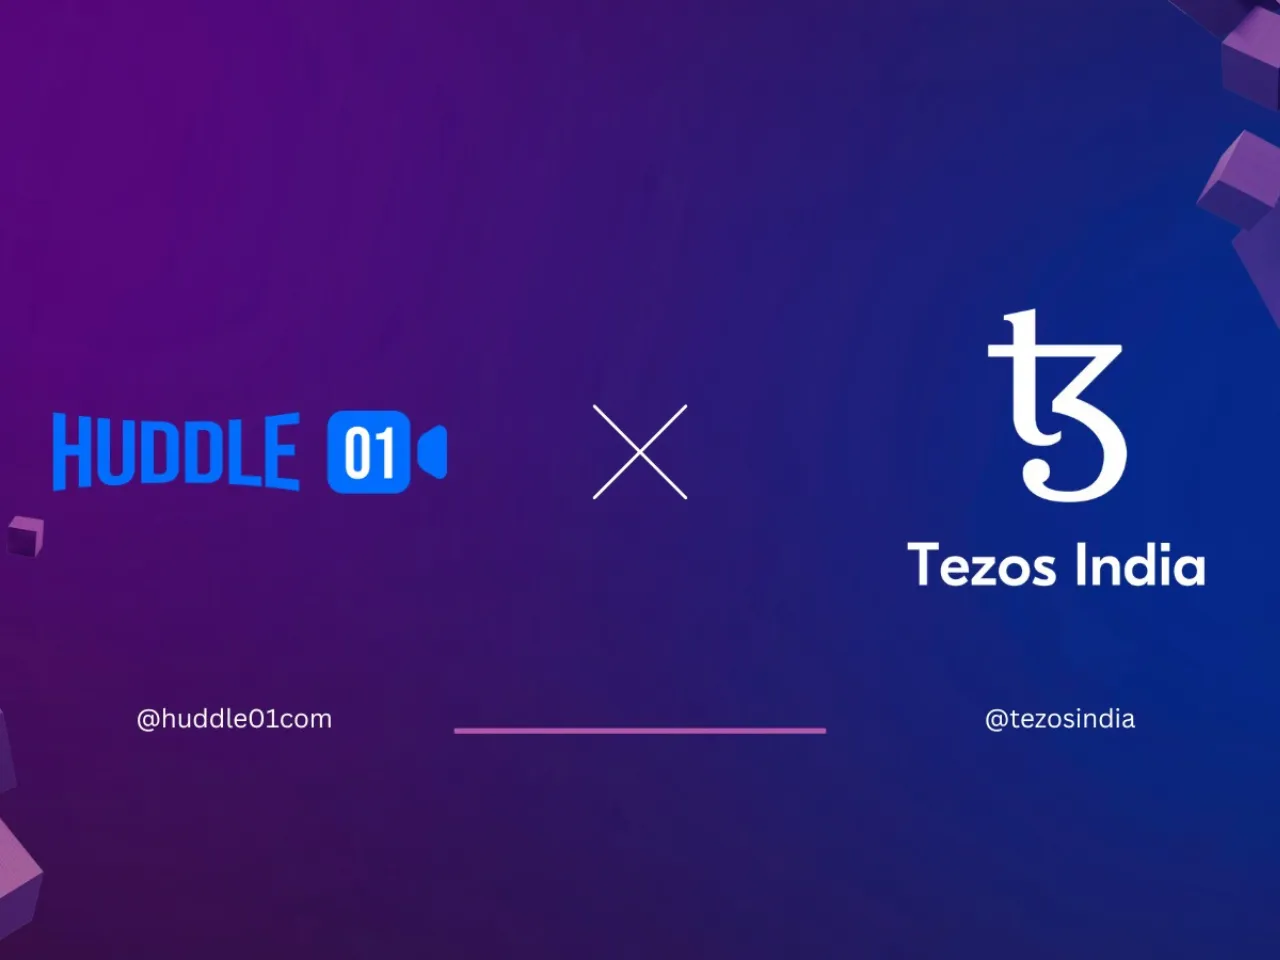 Tezos India partners with Huddle